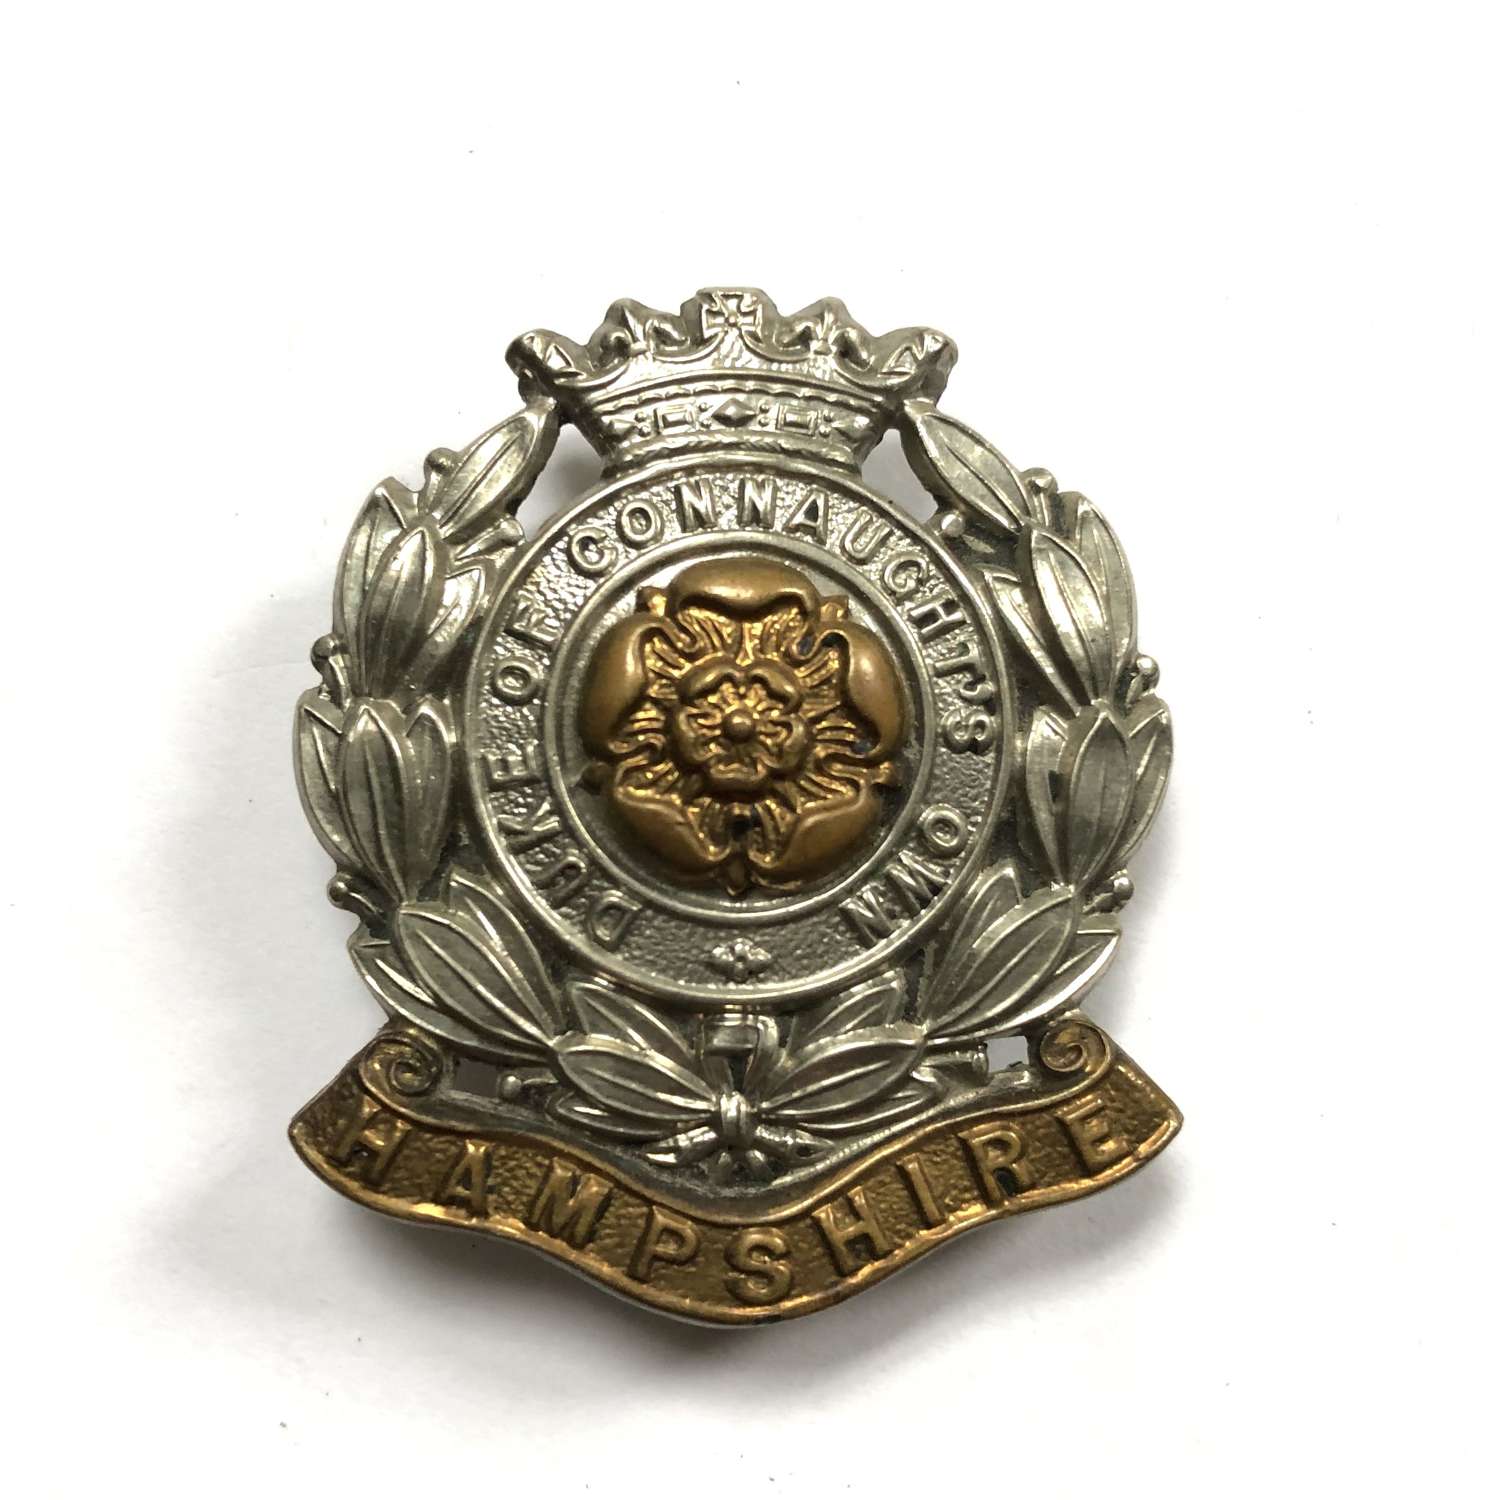 6th Bn. Hampshire Regiment cap badge circa 1908-38